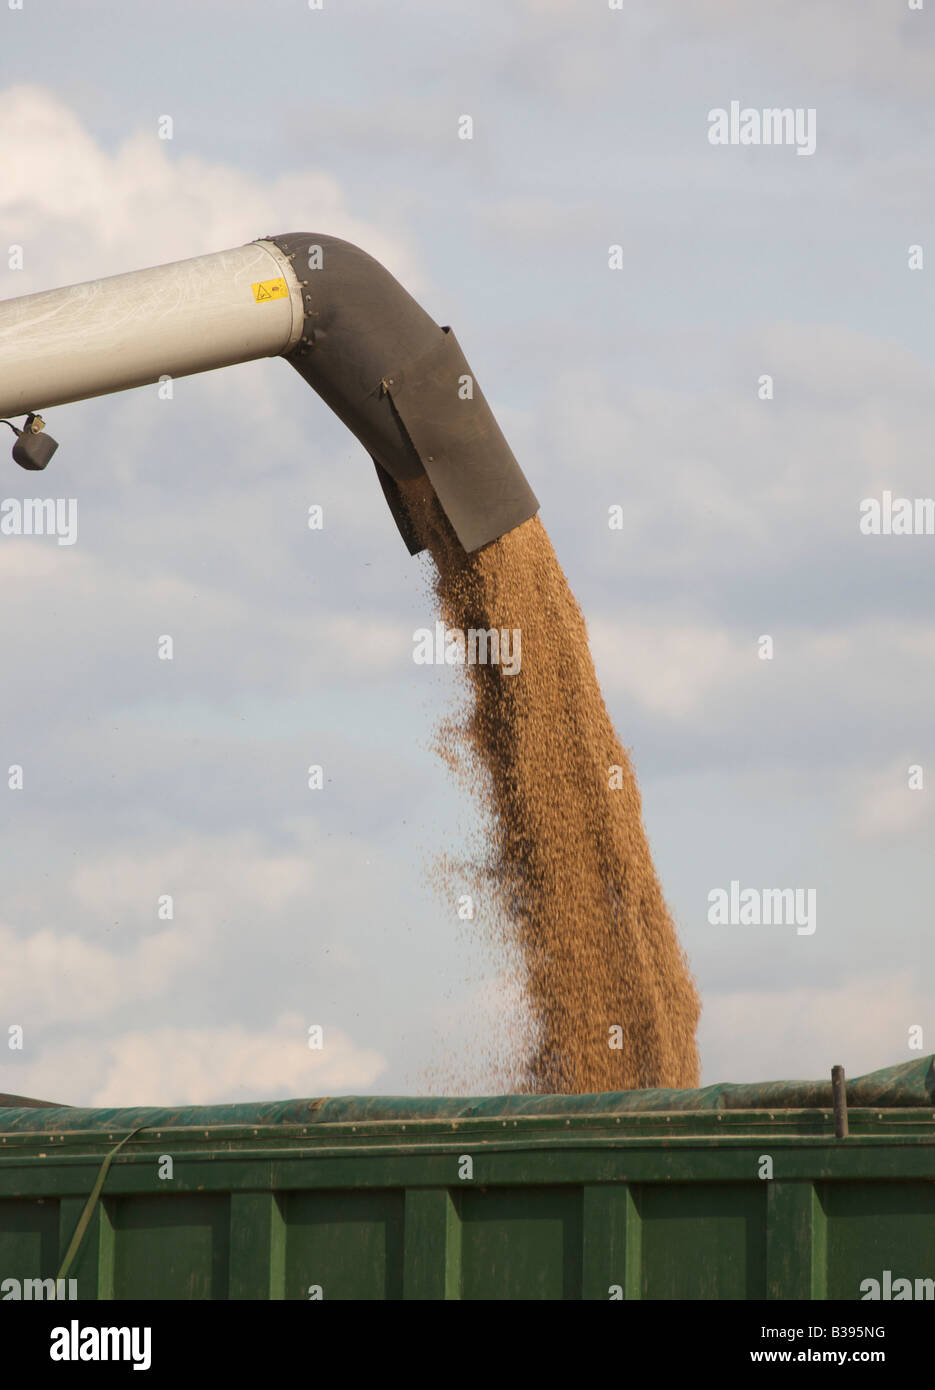 Moissonneuse-batteuse, le déchargement du grain dans une remorque agricole Banque D'Images